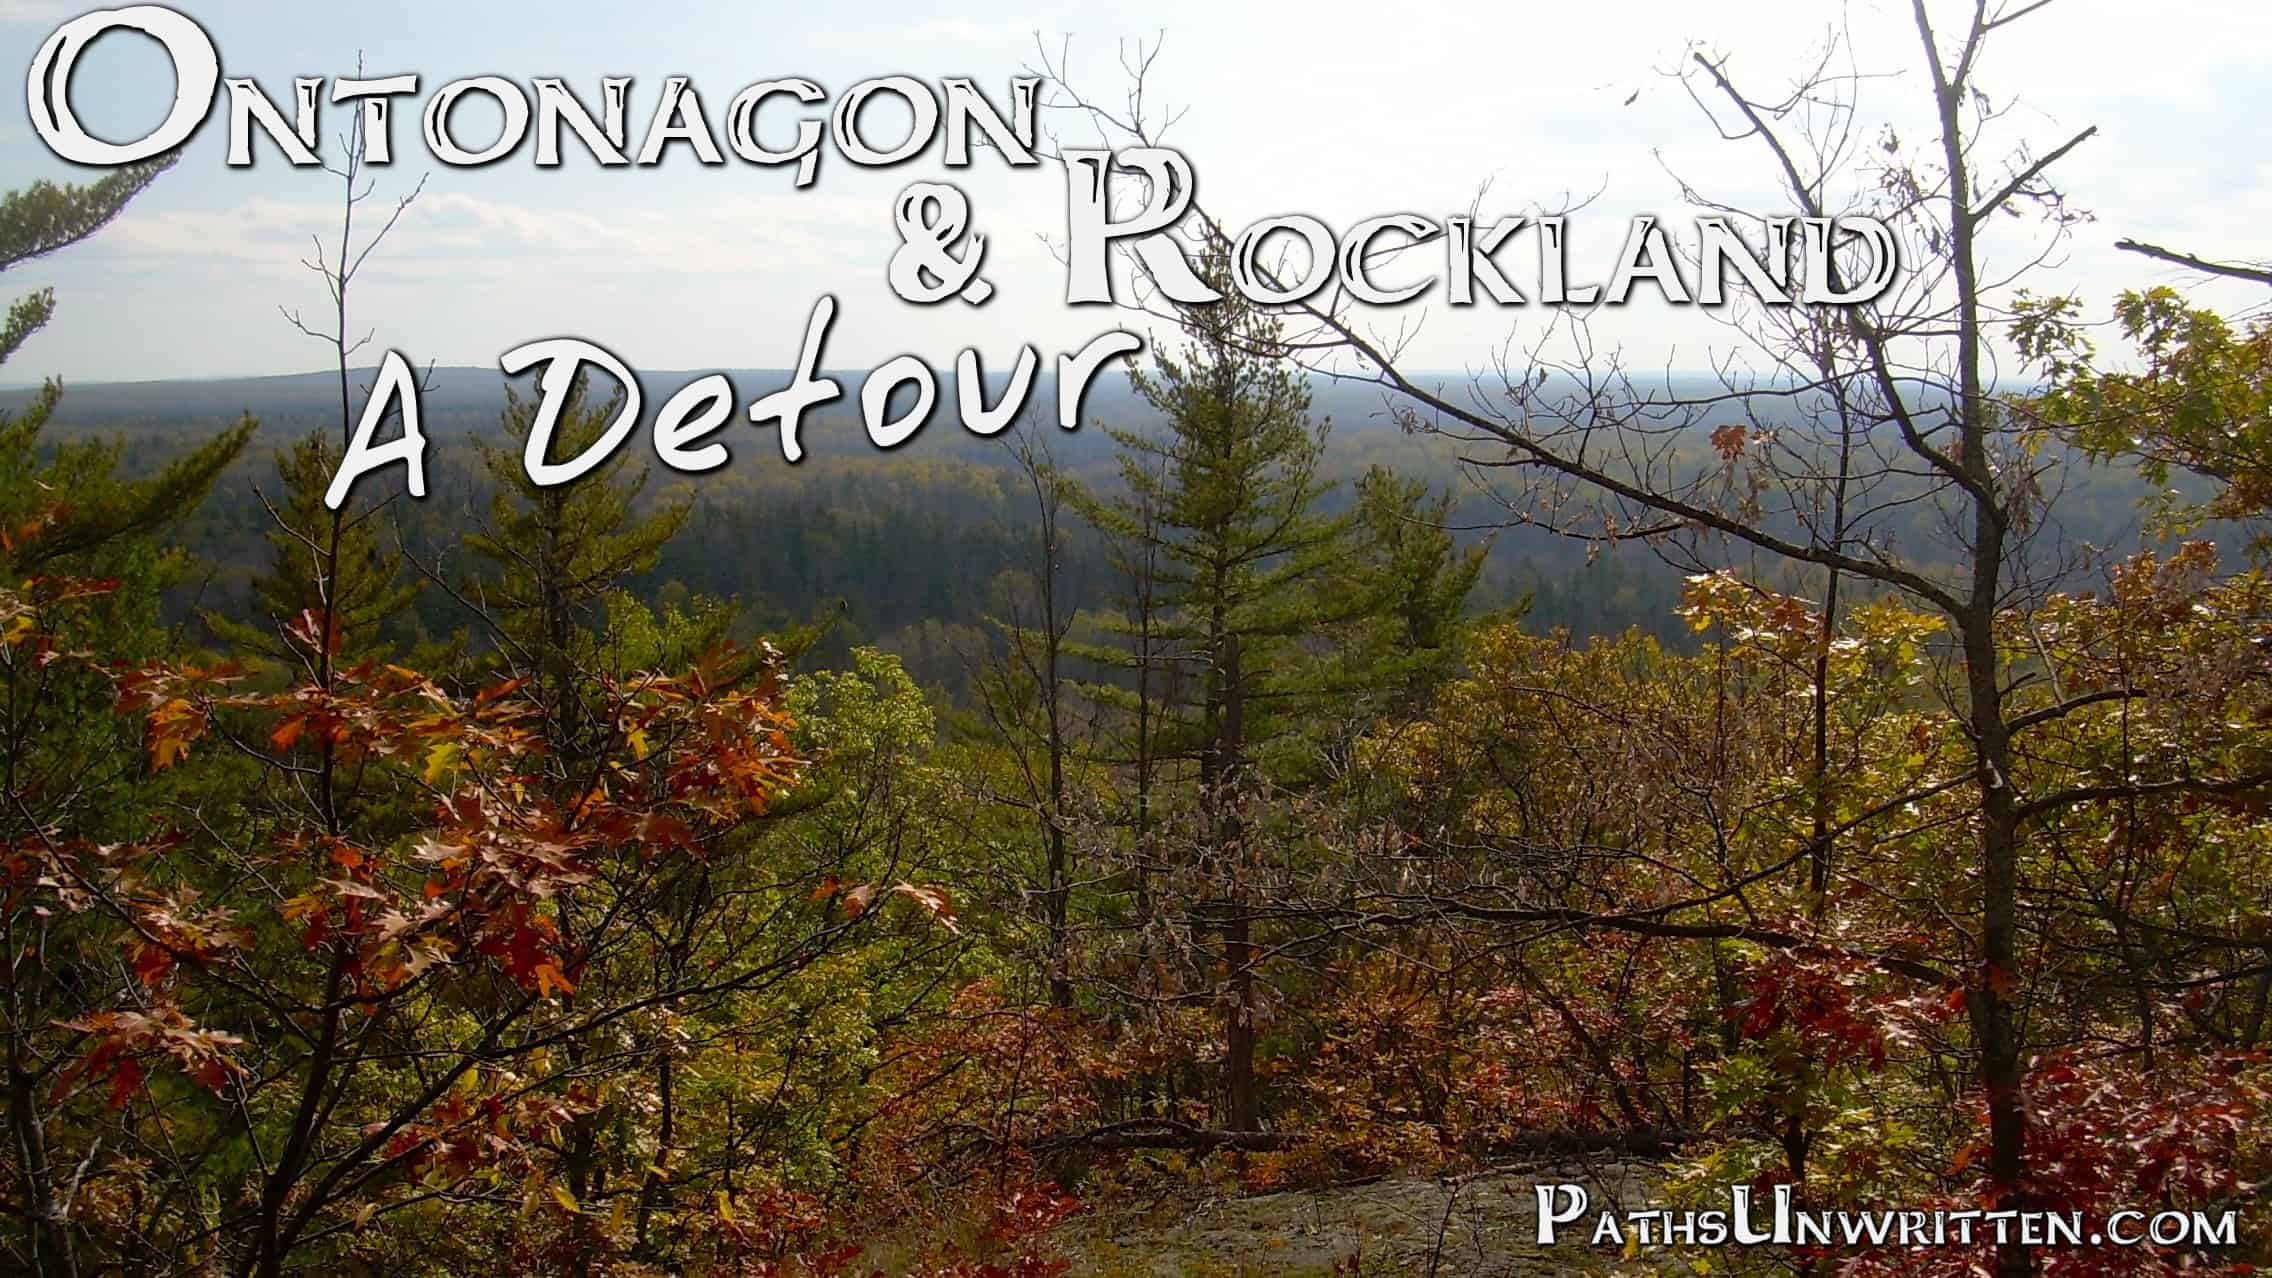 Ontonagon and Rockland:  A Detour